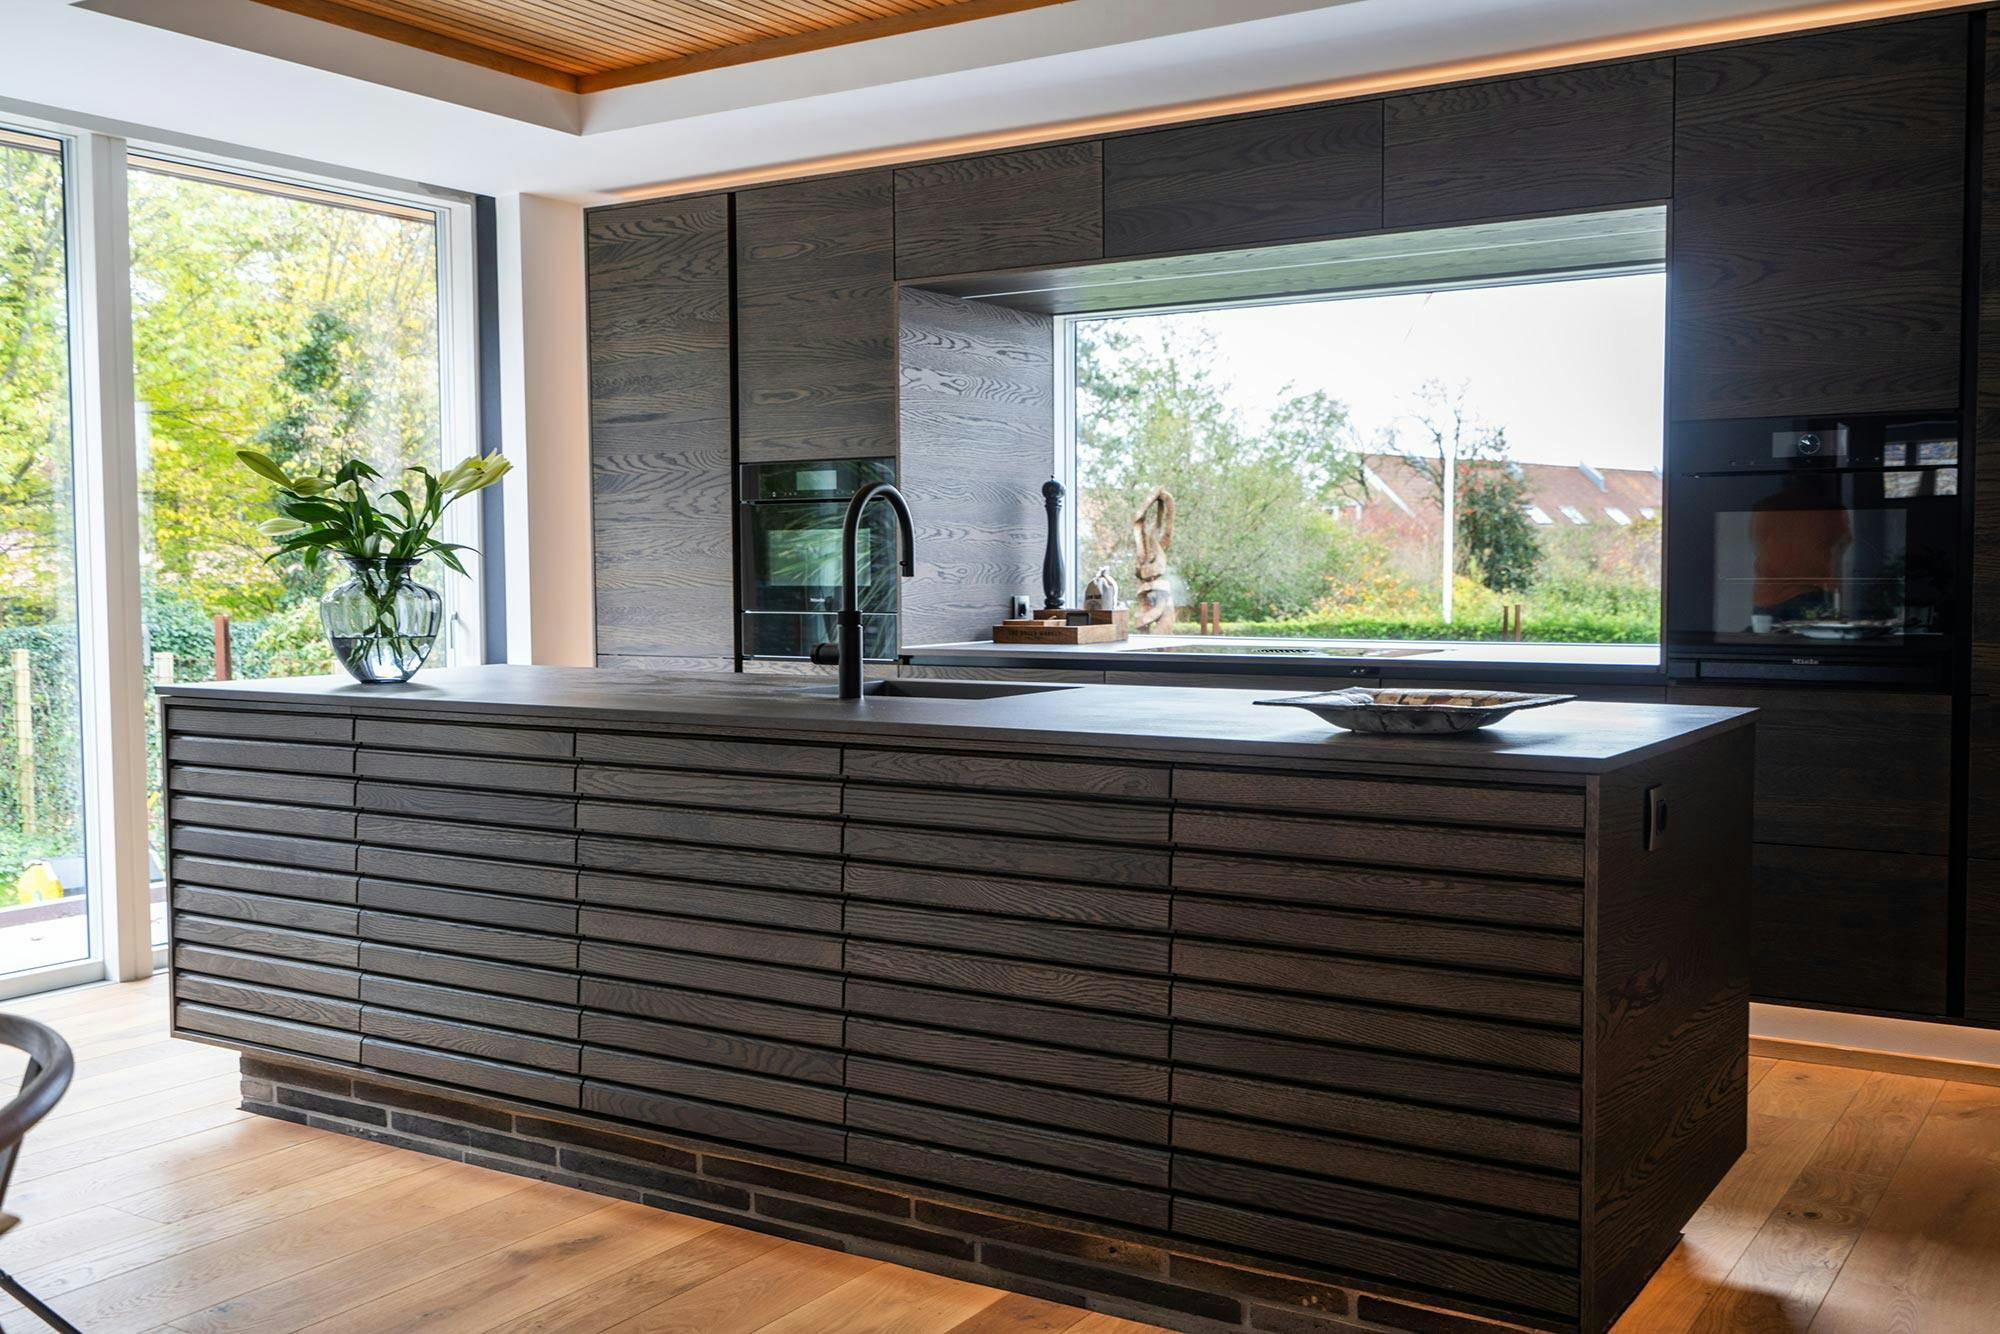 Bildnummer 46 des aktuellen Abschnitts von An open concept kitchen by MS2 Design Studio in a luxury South Beach condo von Cosentino Österreich